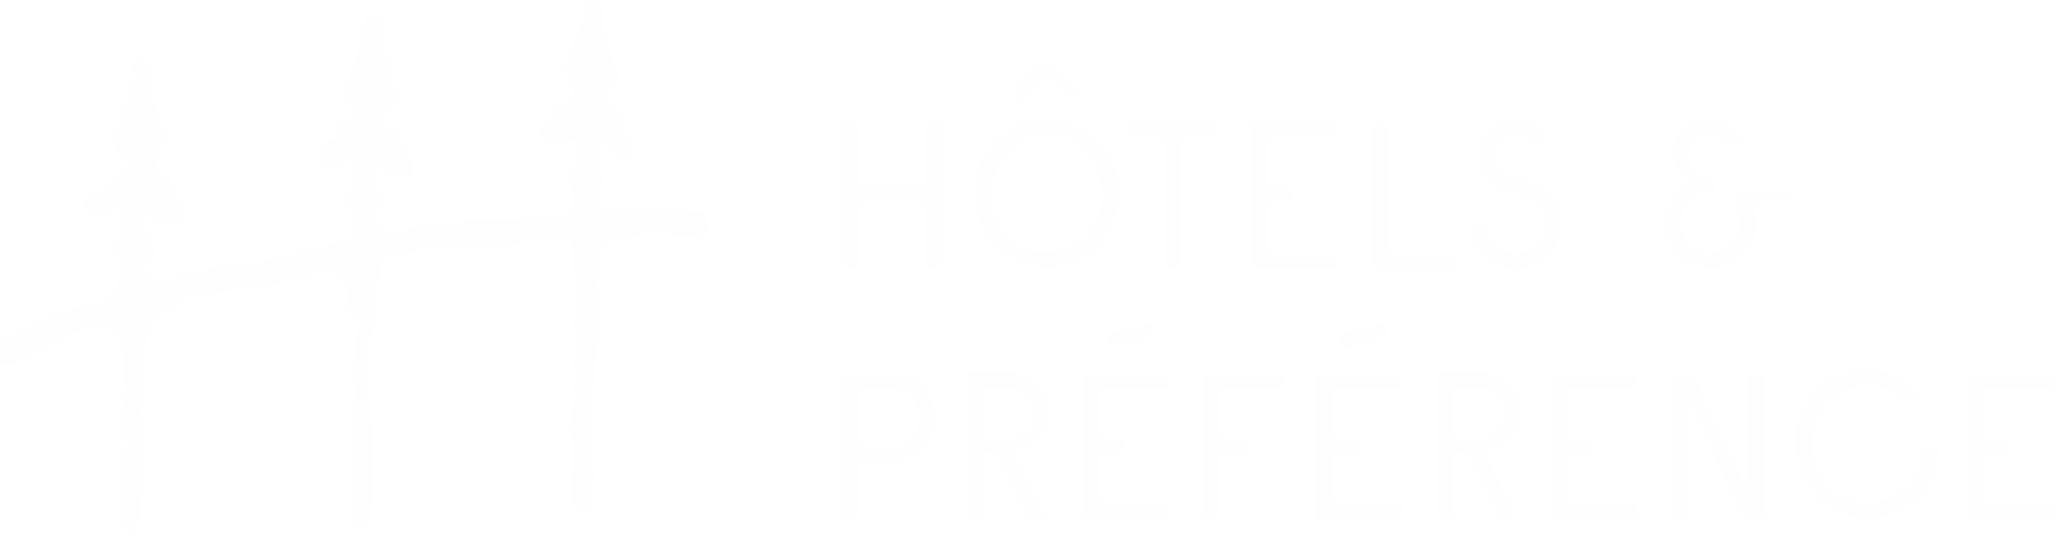 Hôtels et préférence